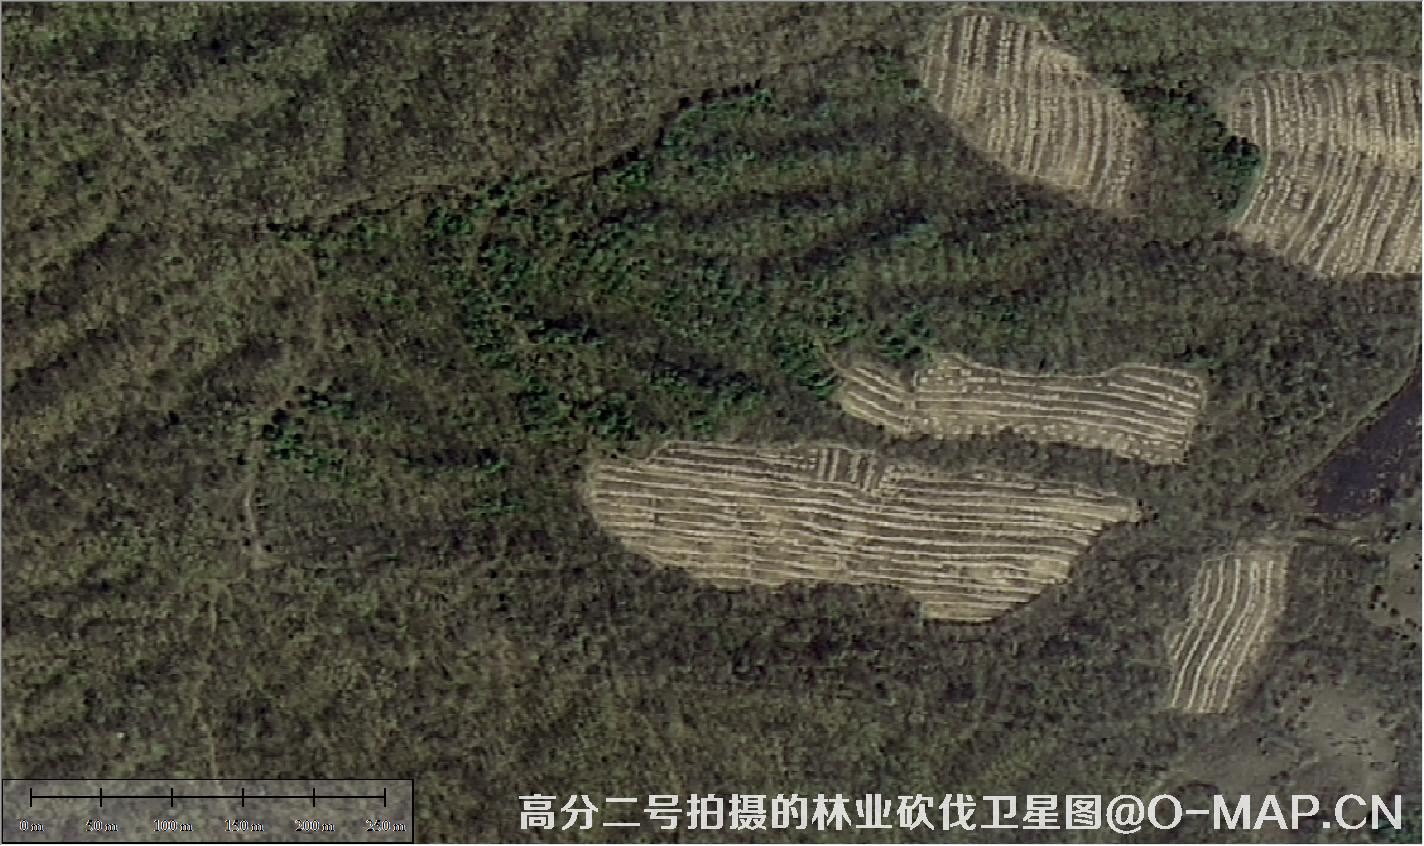 高分二号拍摄的林业砍伐卫星图